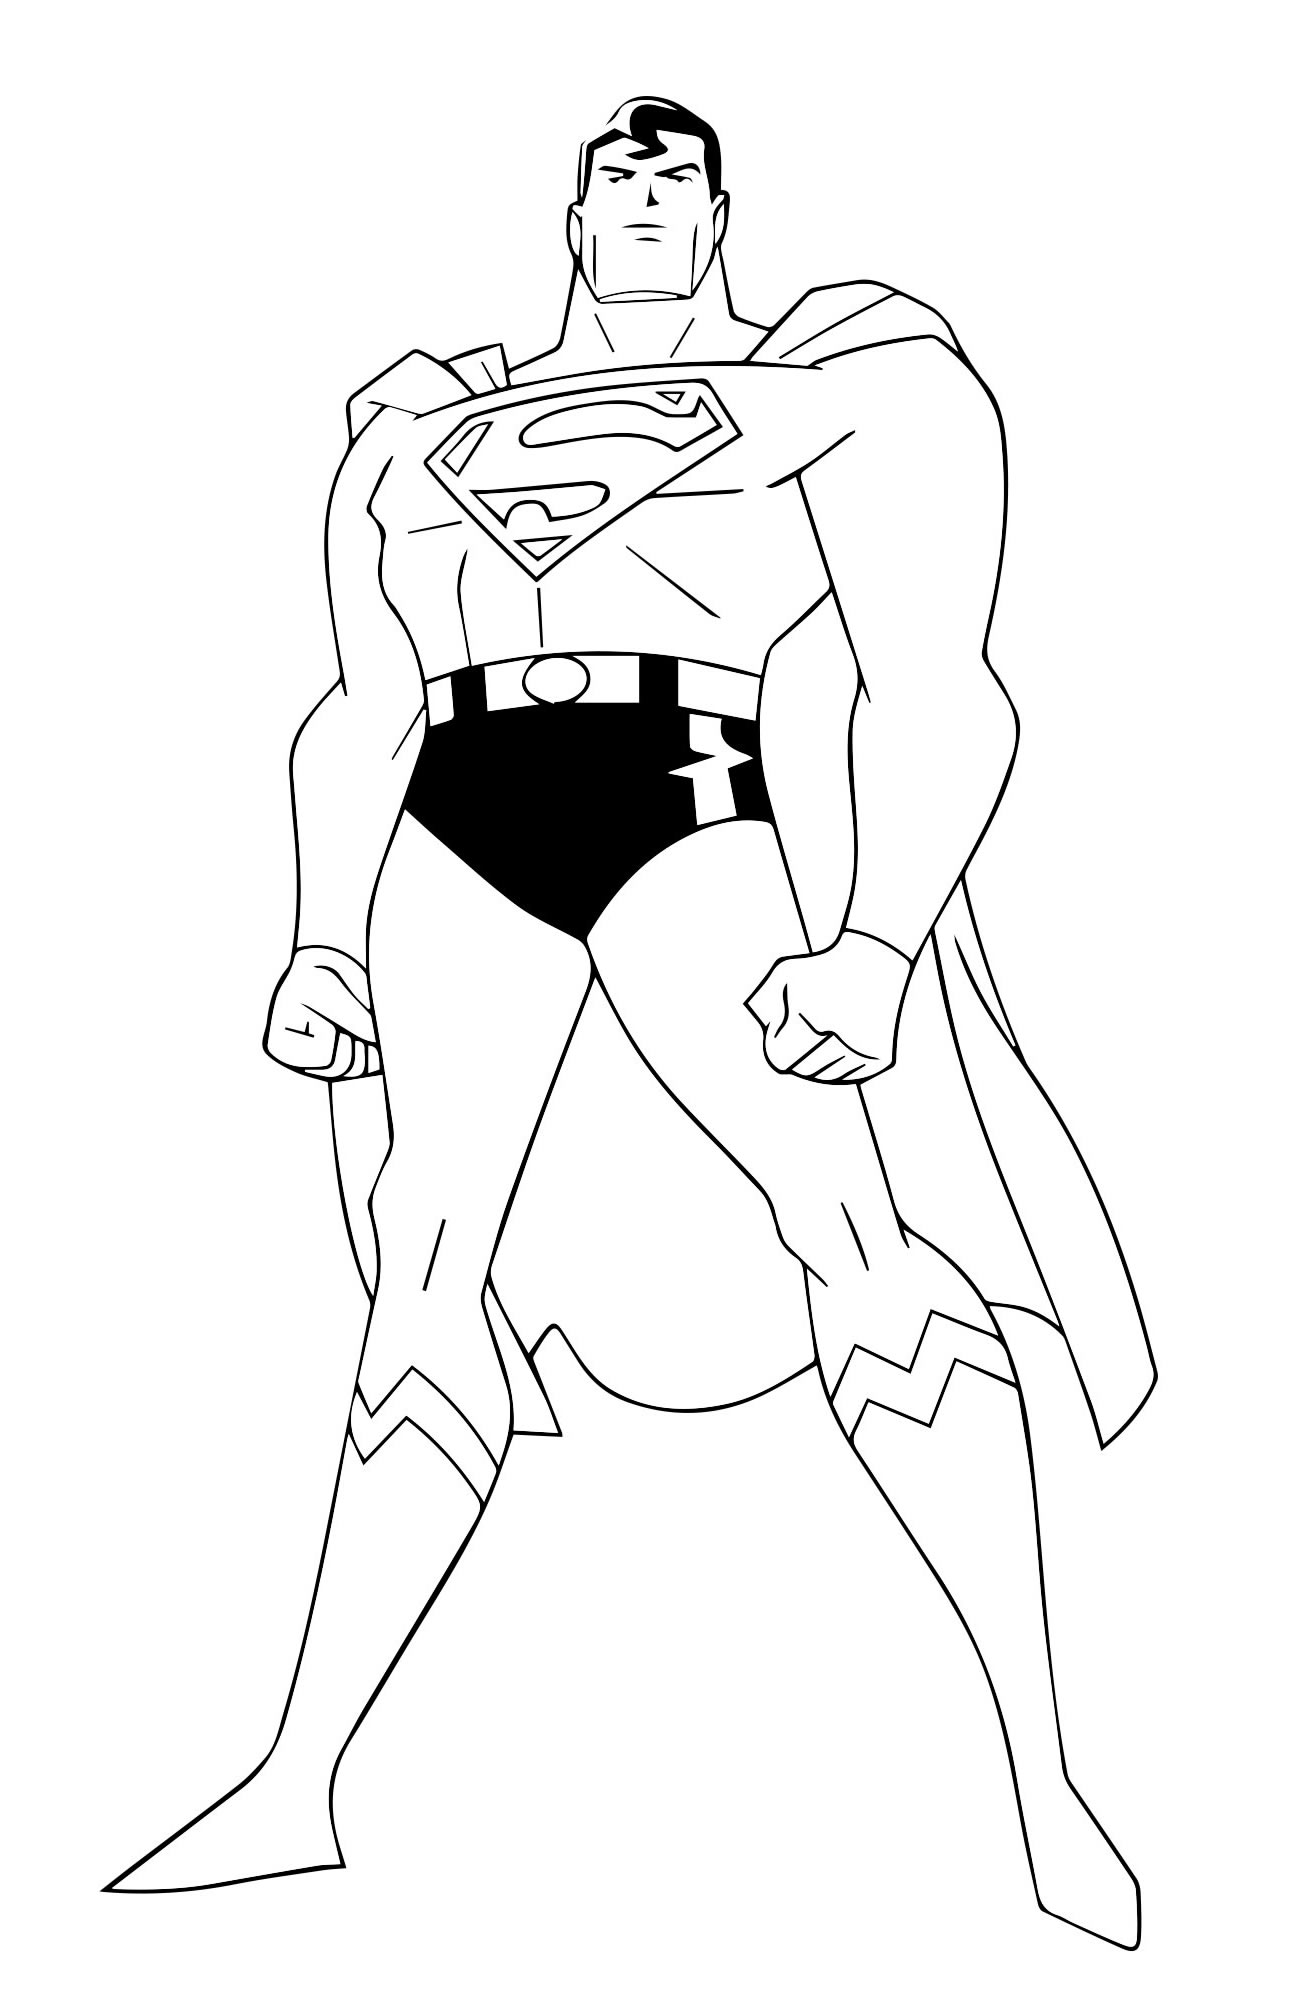 Герой Супермен раскраска для детей